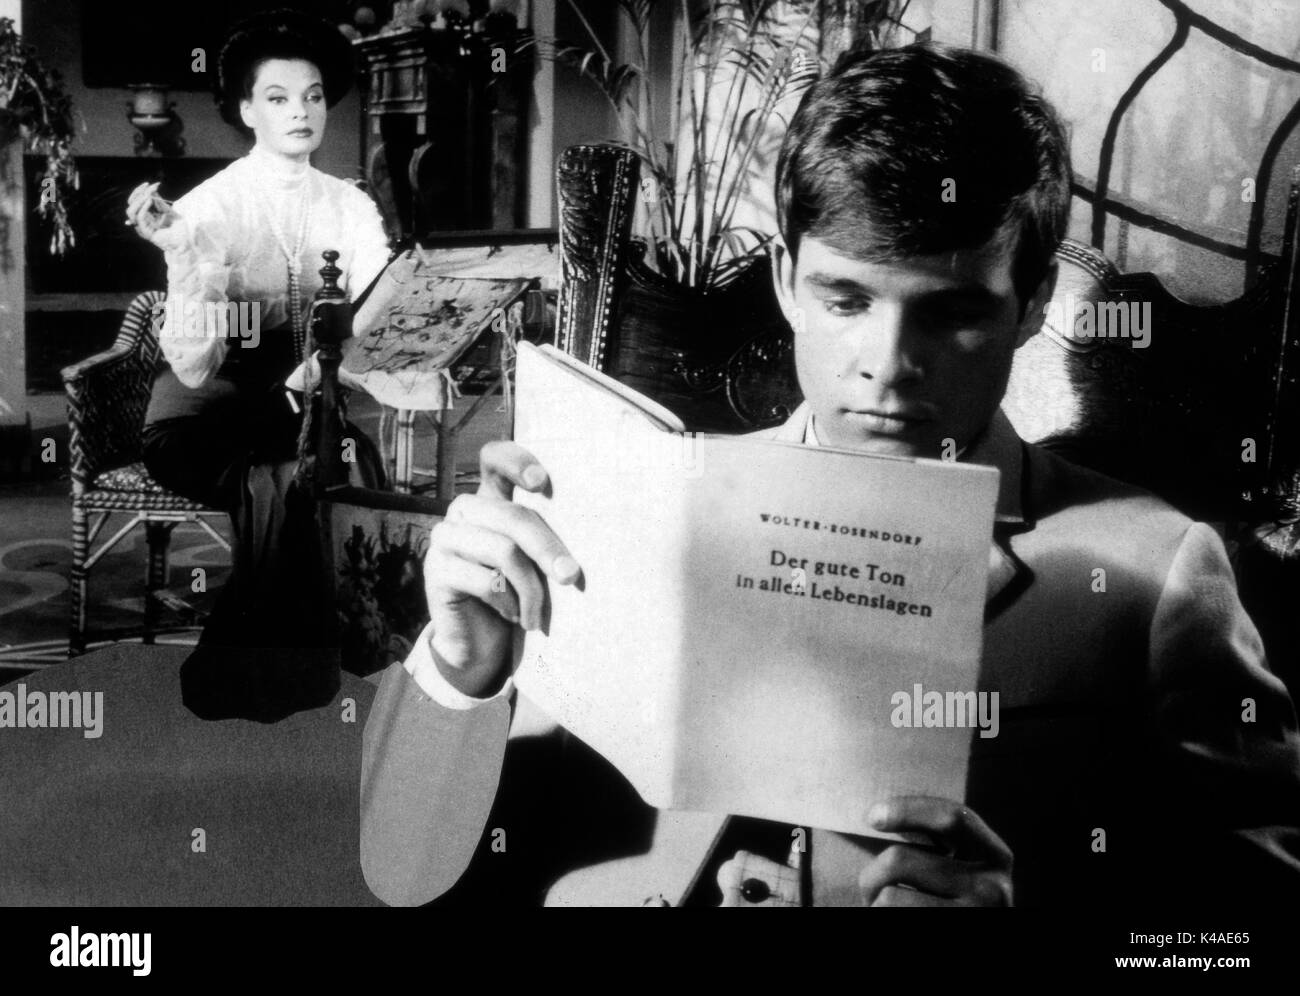 Das schwarz weiss rote Himmelbett, Deutschland/Frankreich 1962, Regie: Rolf Thiele, Darsteller: Margot Hielscher, Thomas Fritsch Stock Photo